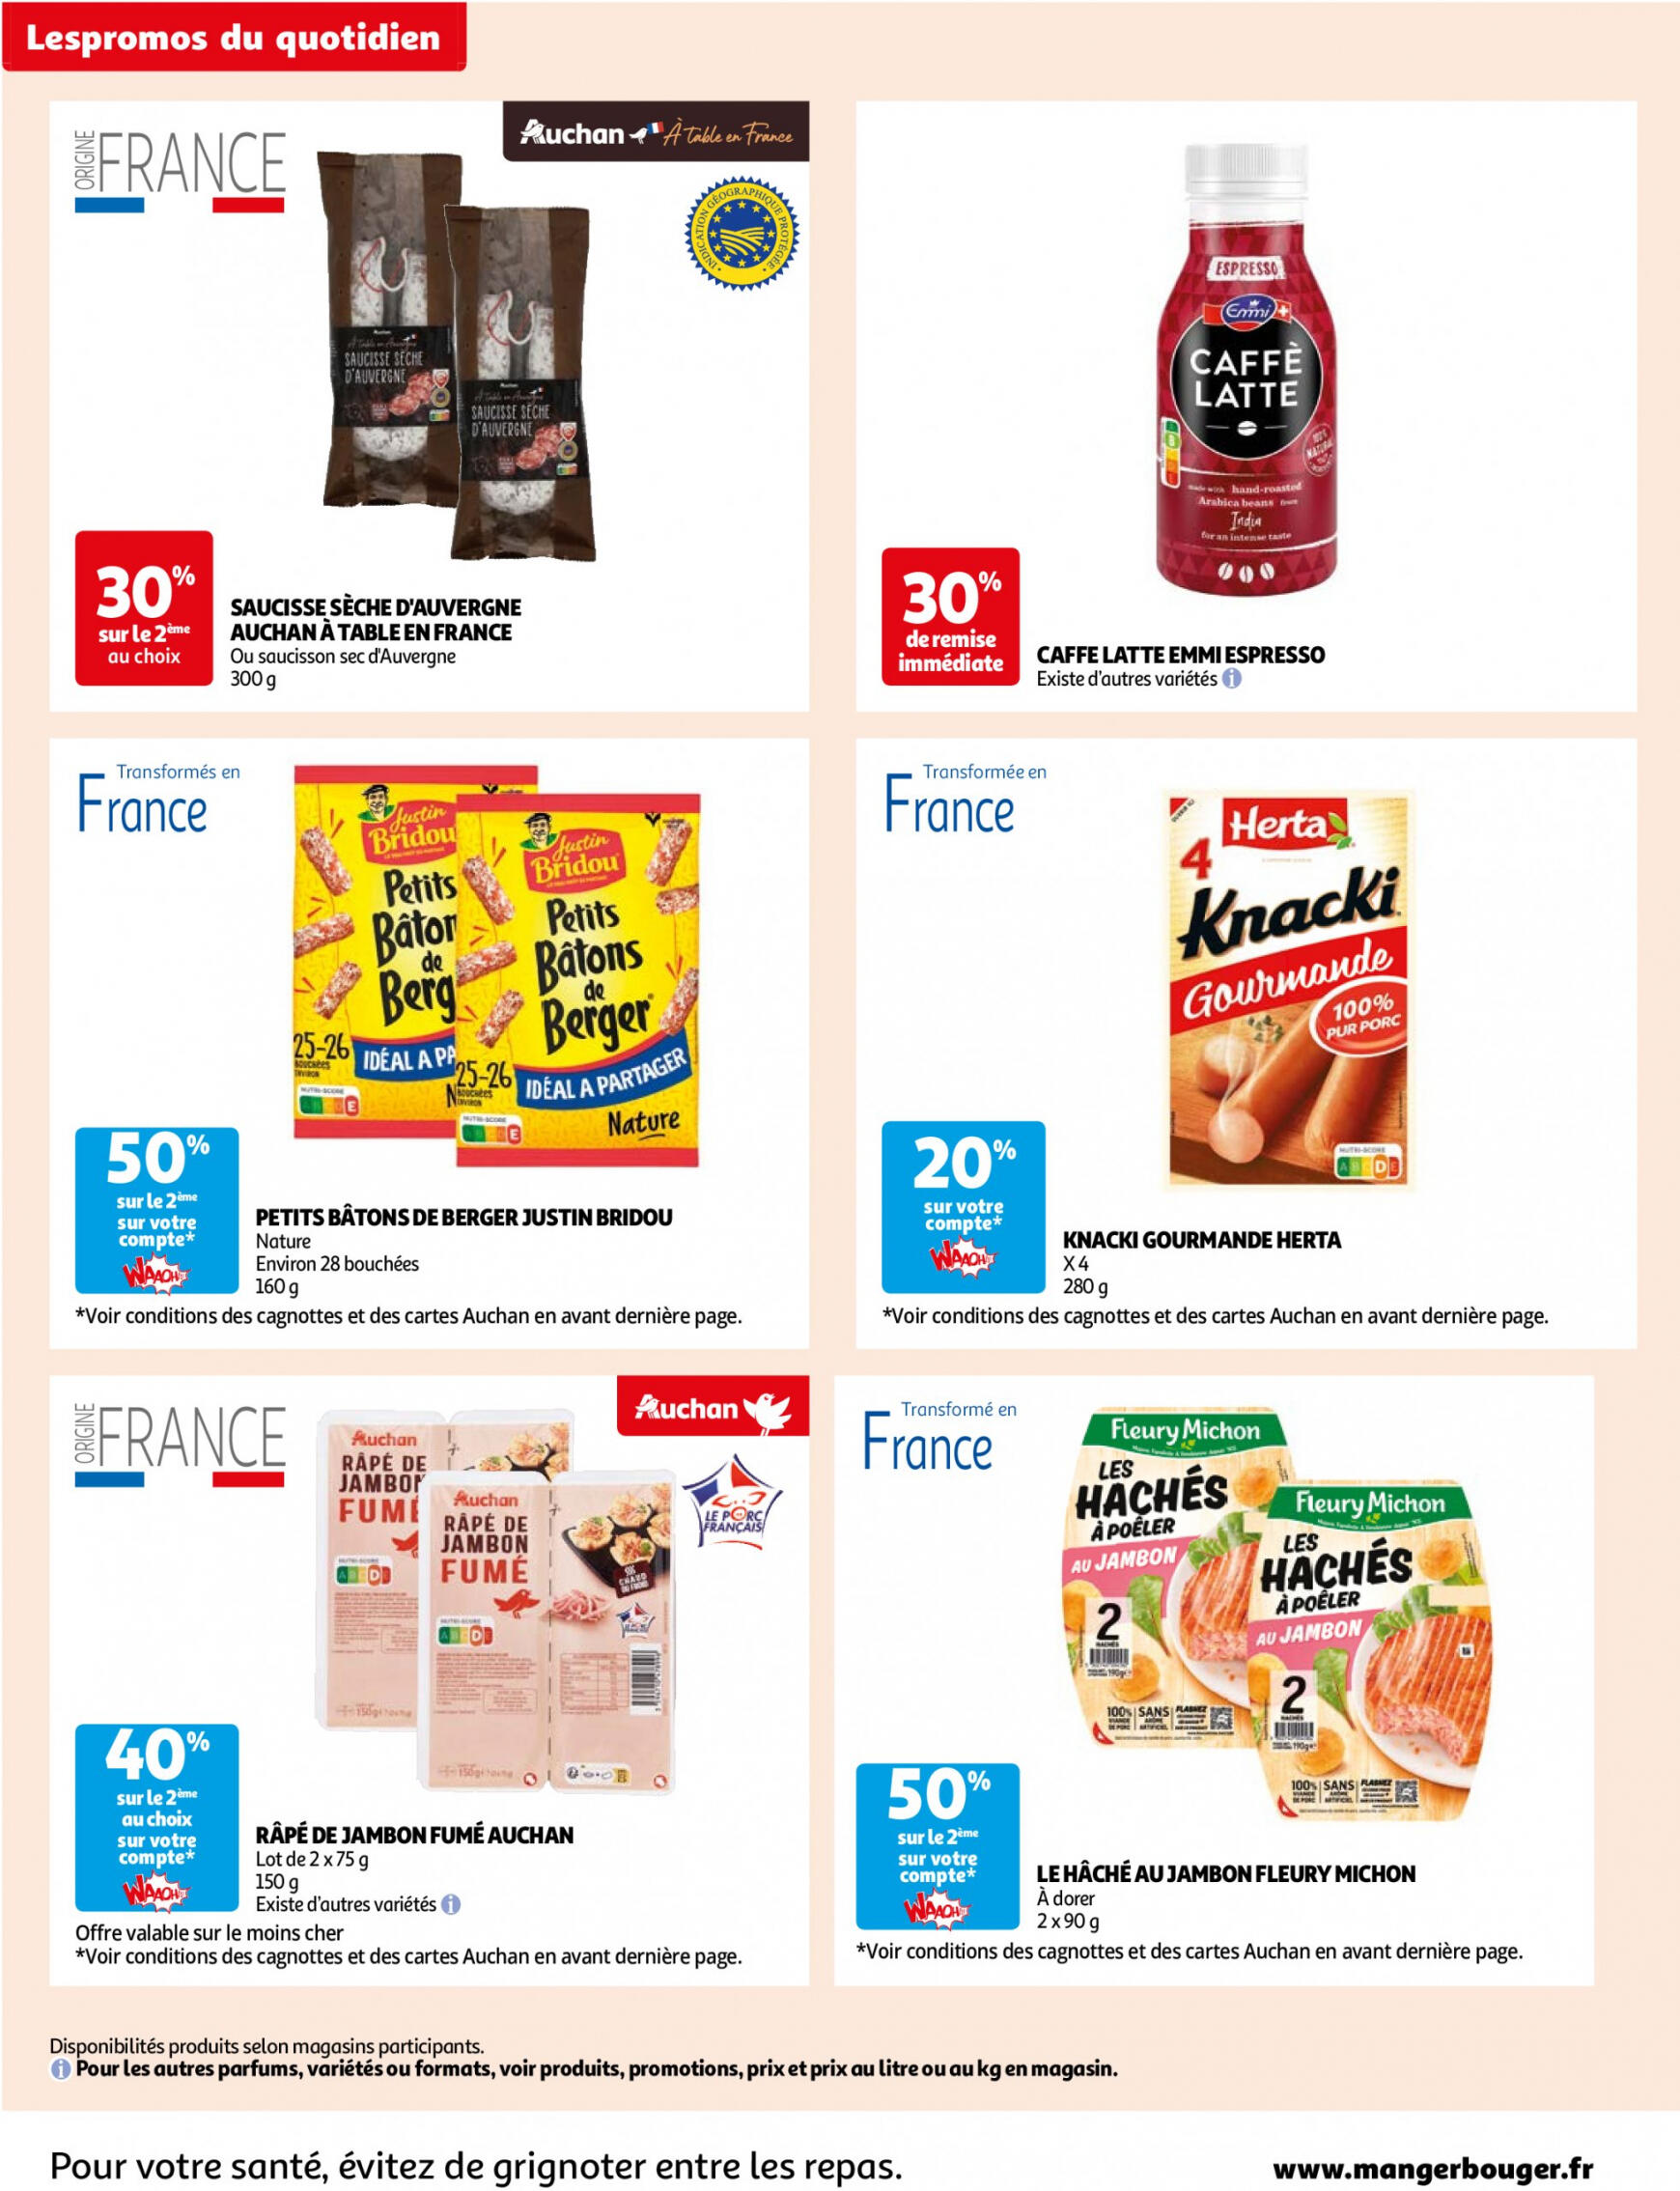 auchan - Auchan - Des économies au quotidien folder huidig 14.05. - 03.06. - page: 6